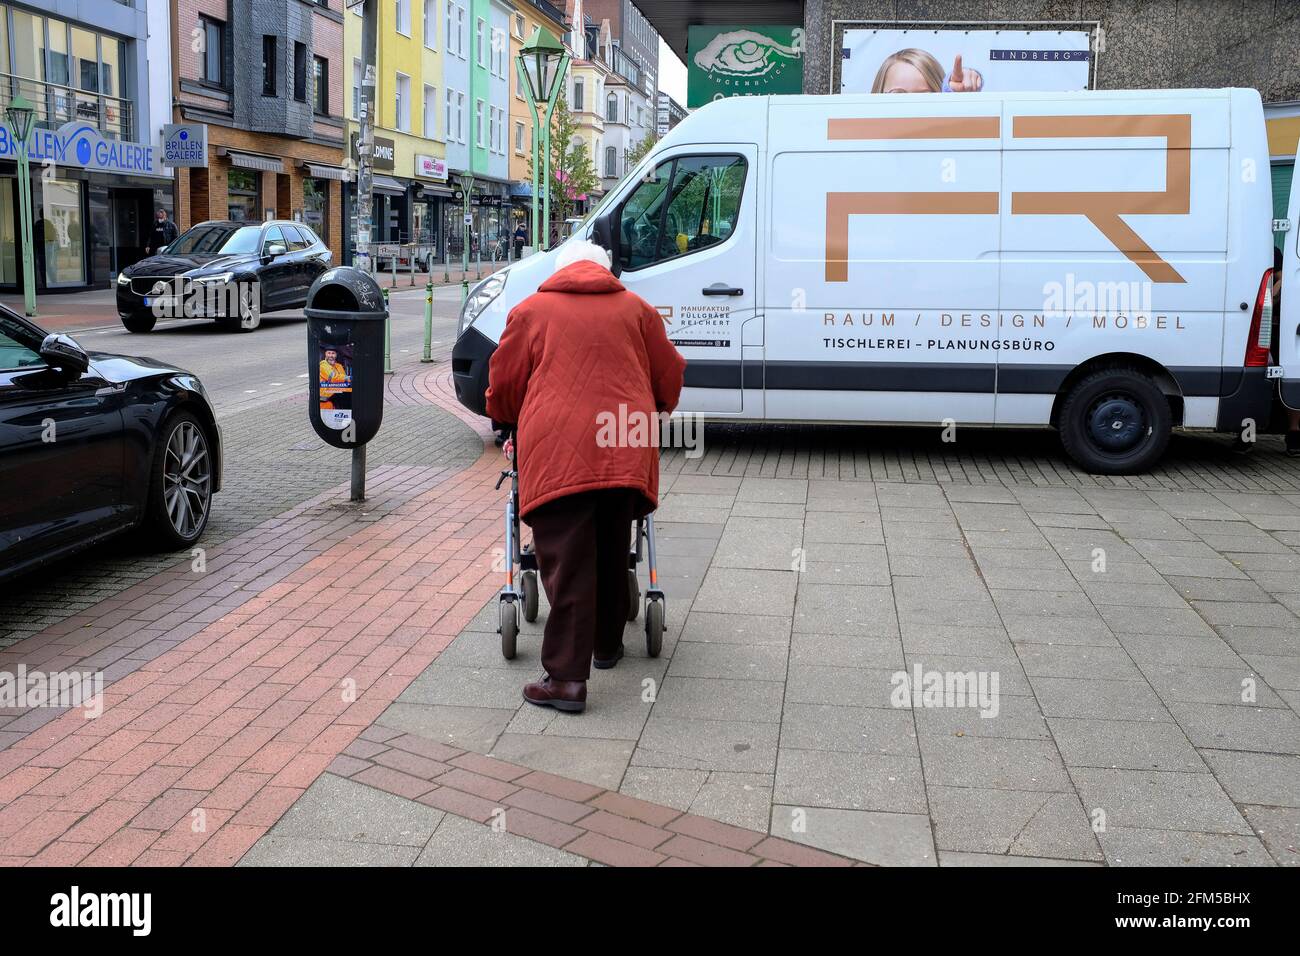 06.05.2021, Essen, Ruhrgebiet, Nordrhein-Westfalen, Deutschland - es wird eng fuer eine alte, gebrechliche Frau mit einem Rollator auf einem Buergerst Banque D'Images